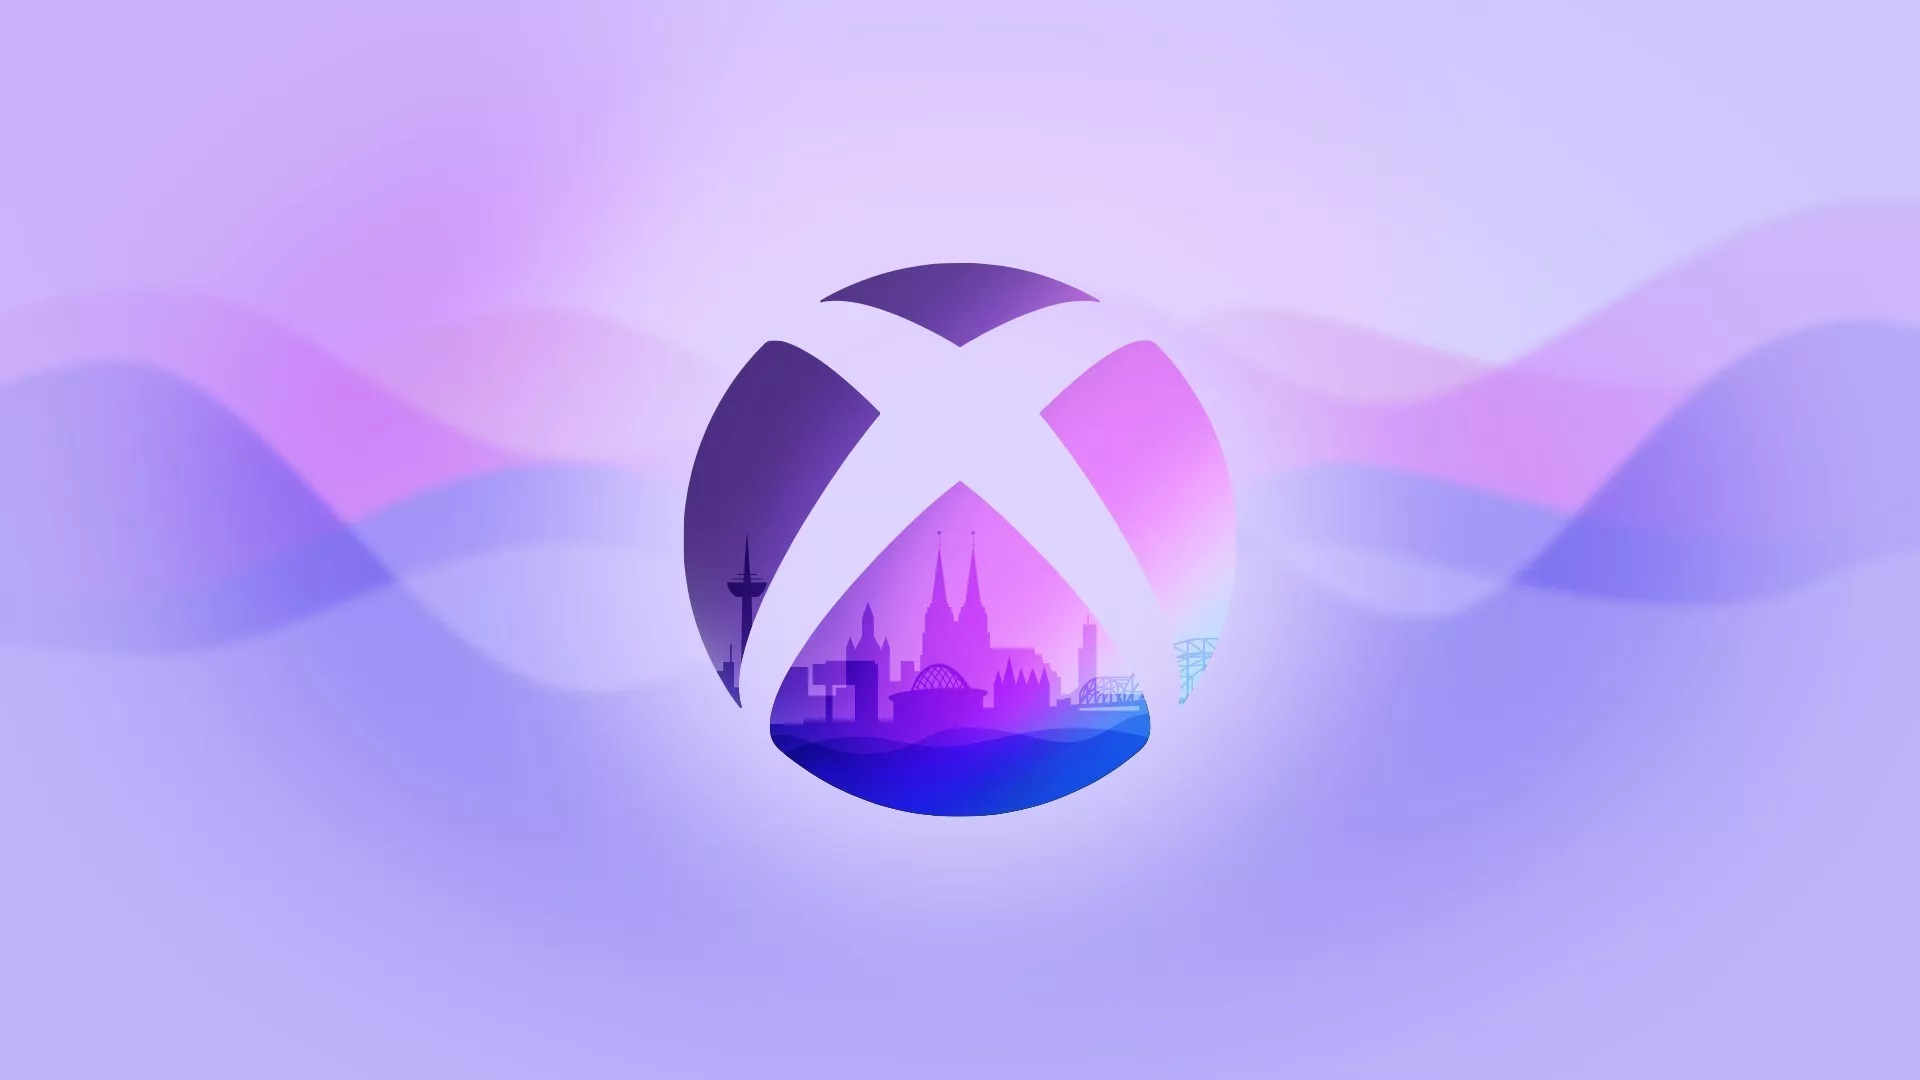 Xbox detailliert seinen Gamescom Auftritt Heropic